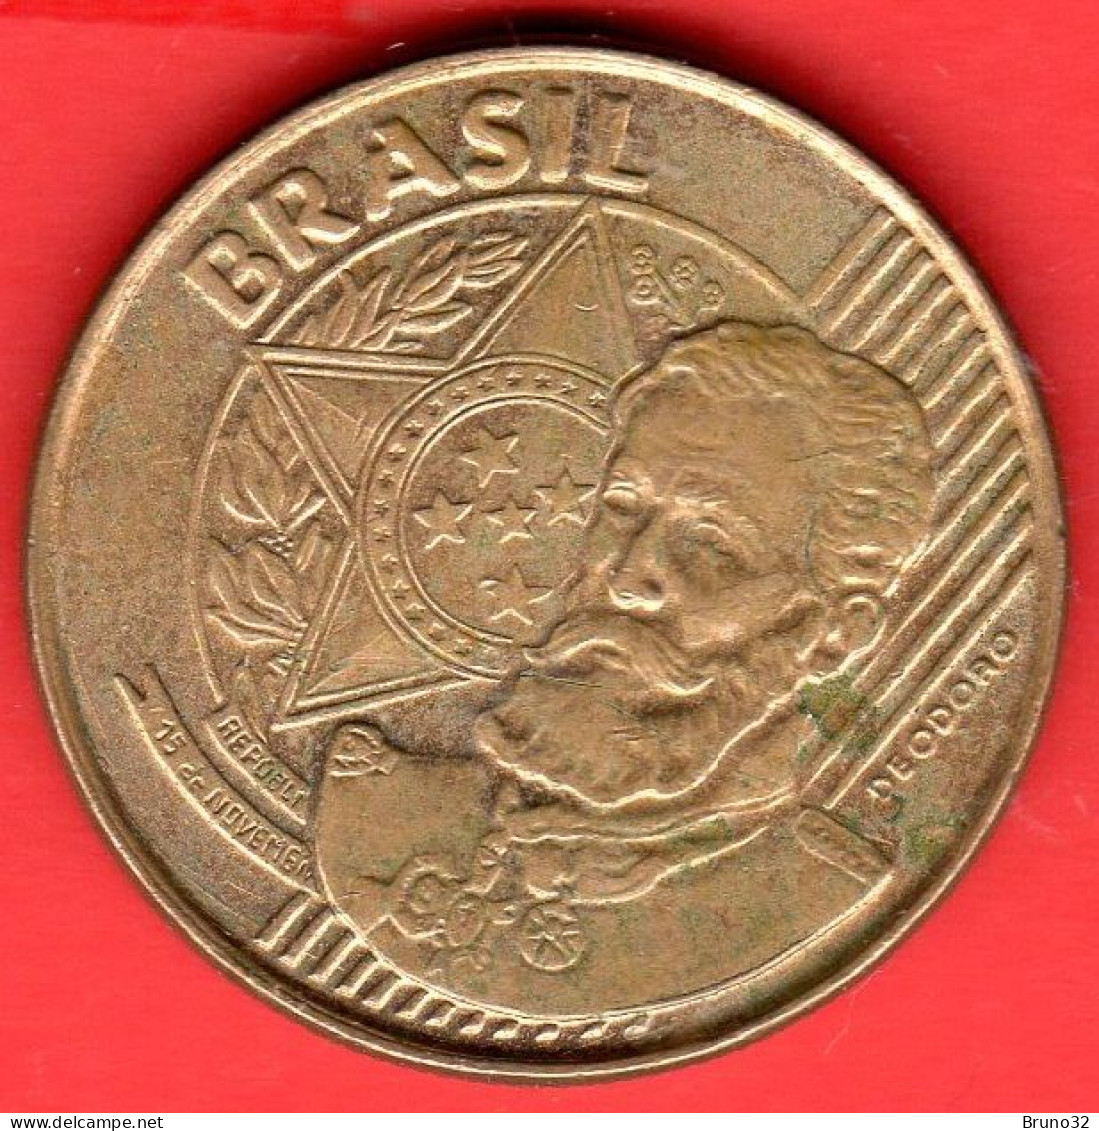 BRASILE - BRASIL - 2001 - 25 Centavos - SPL/XF - Come Da Foto - Brazil